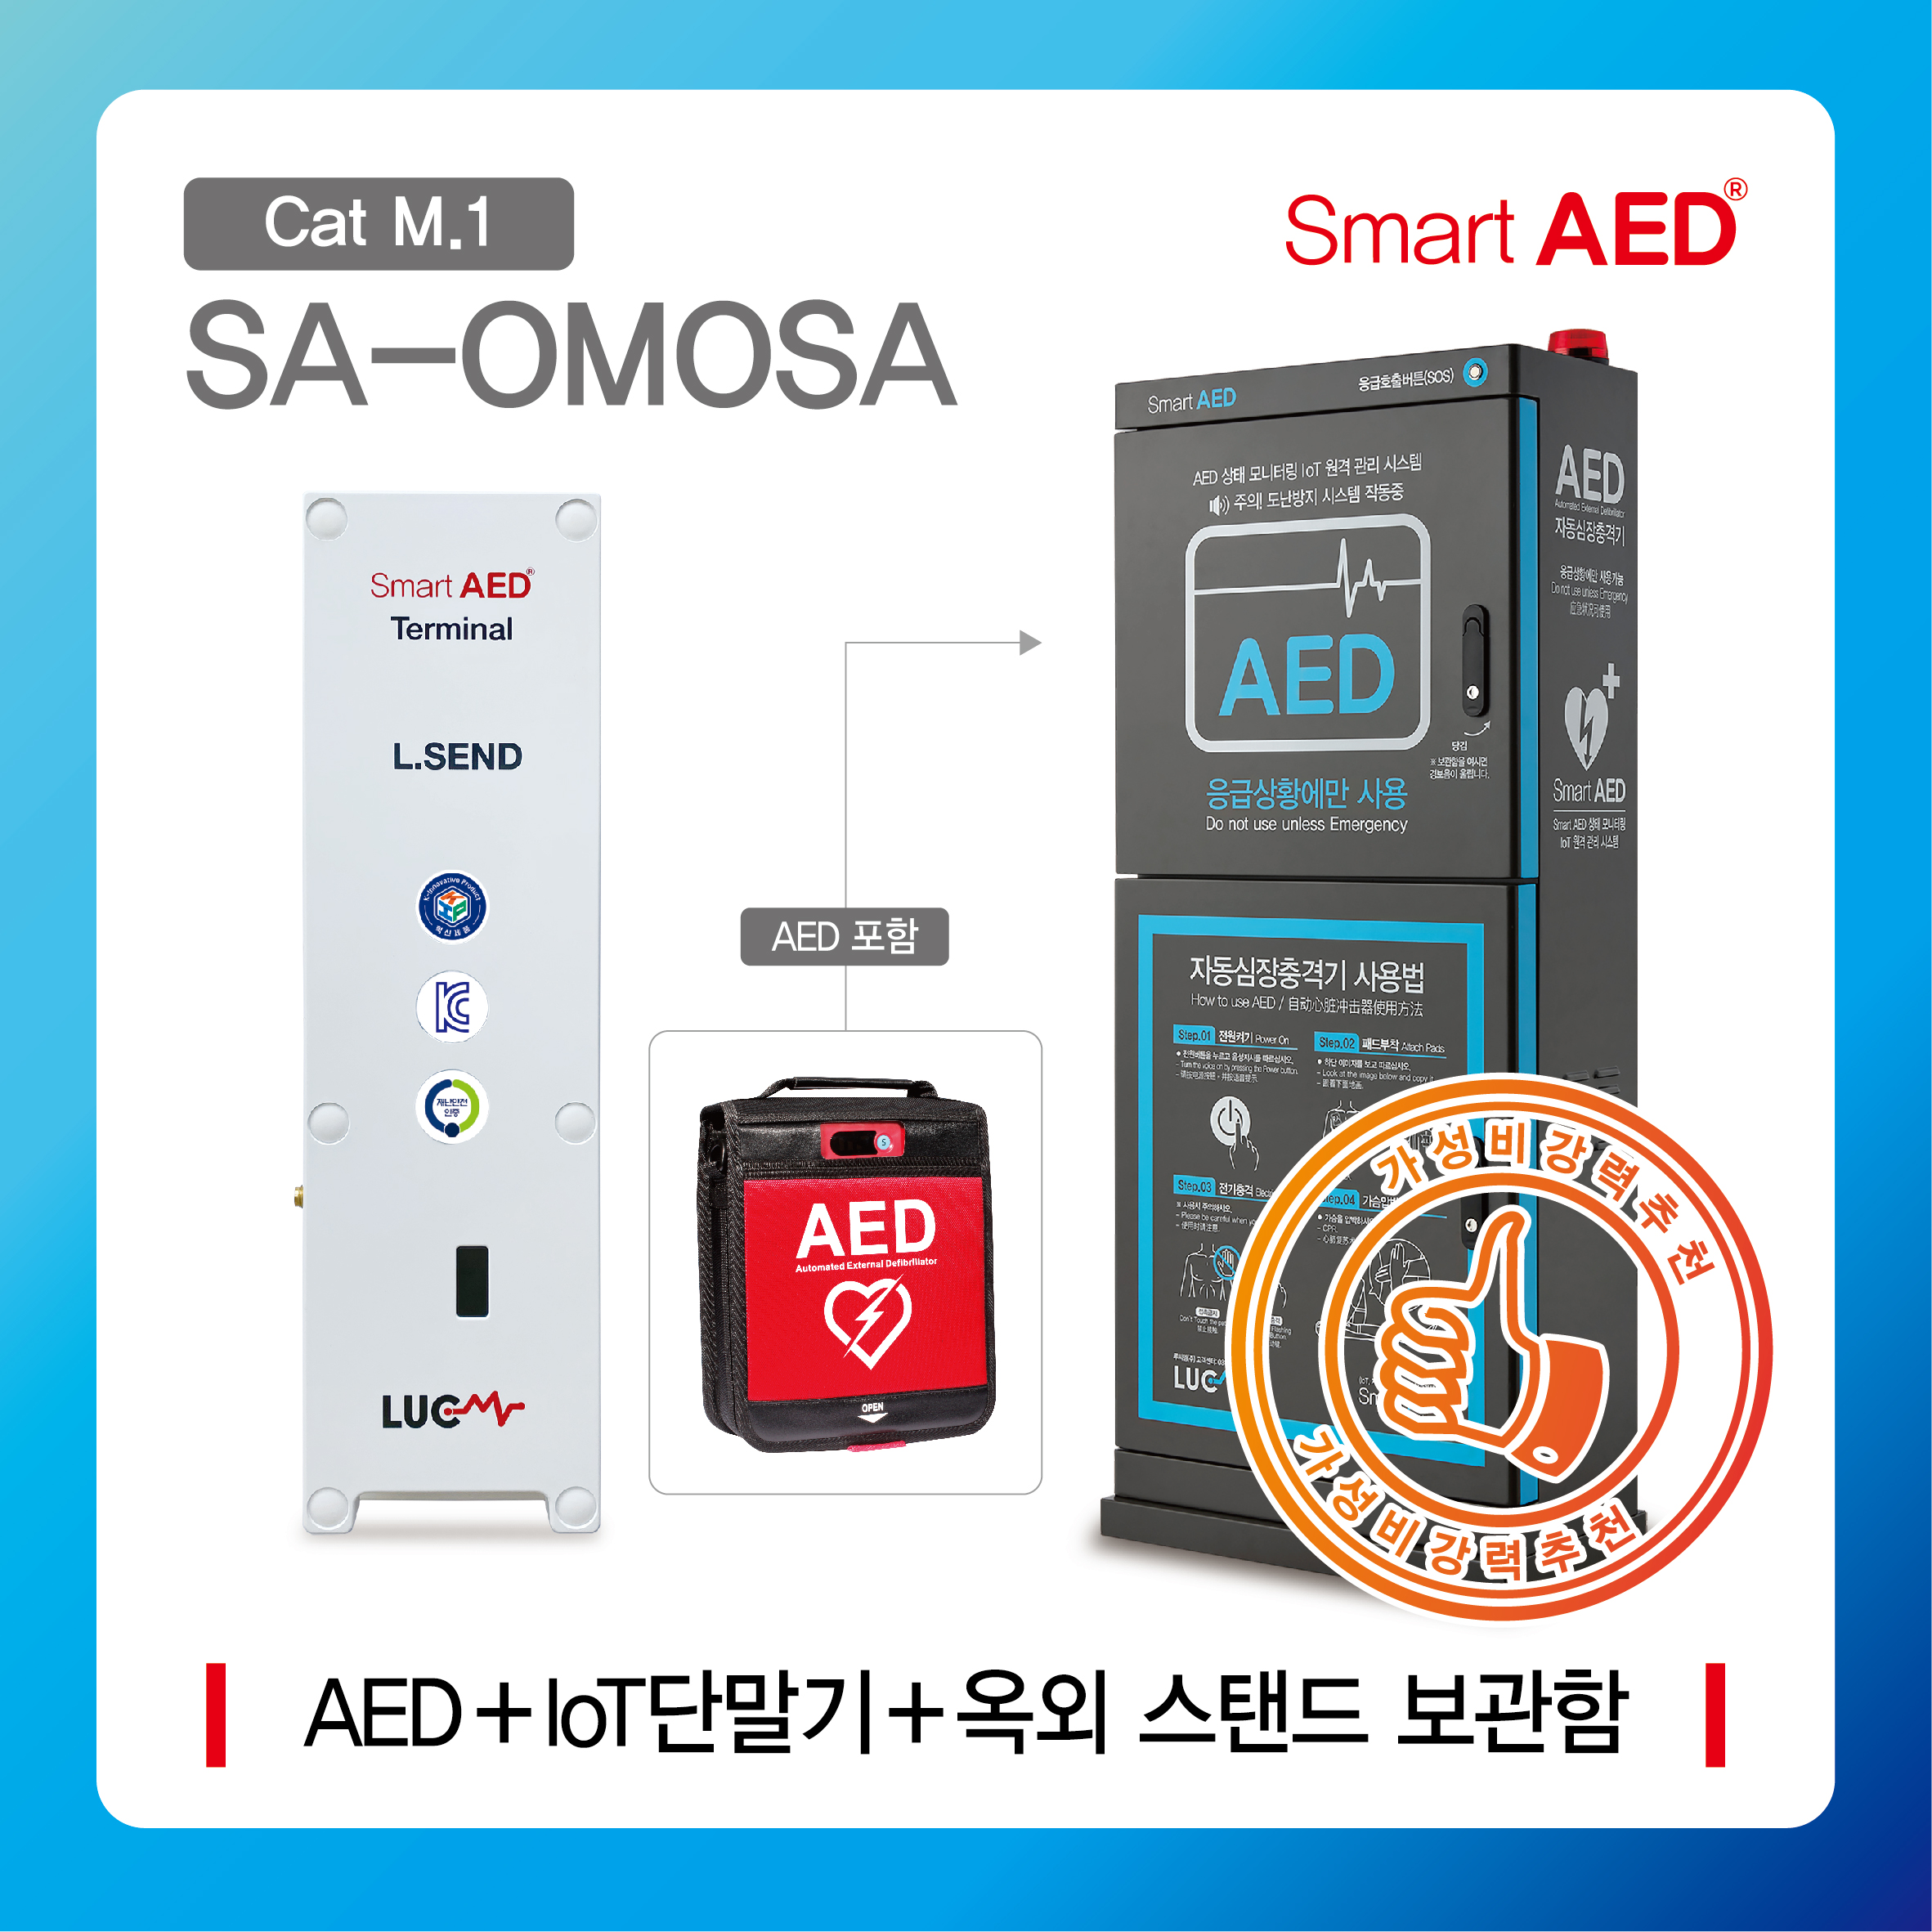 [ SA-OMOSA ] 스마트 AED 통합모니터링 장치 및 옥외 스탠드보관함(AED포함)